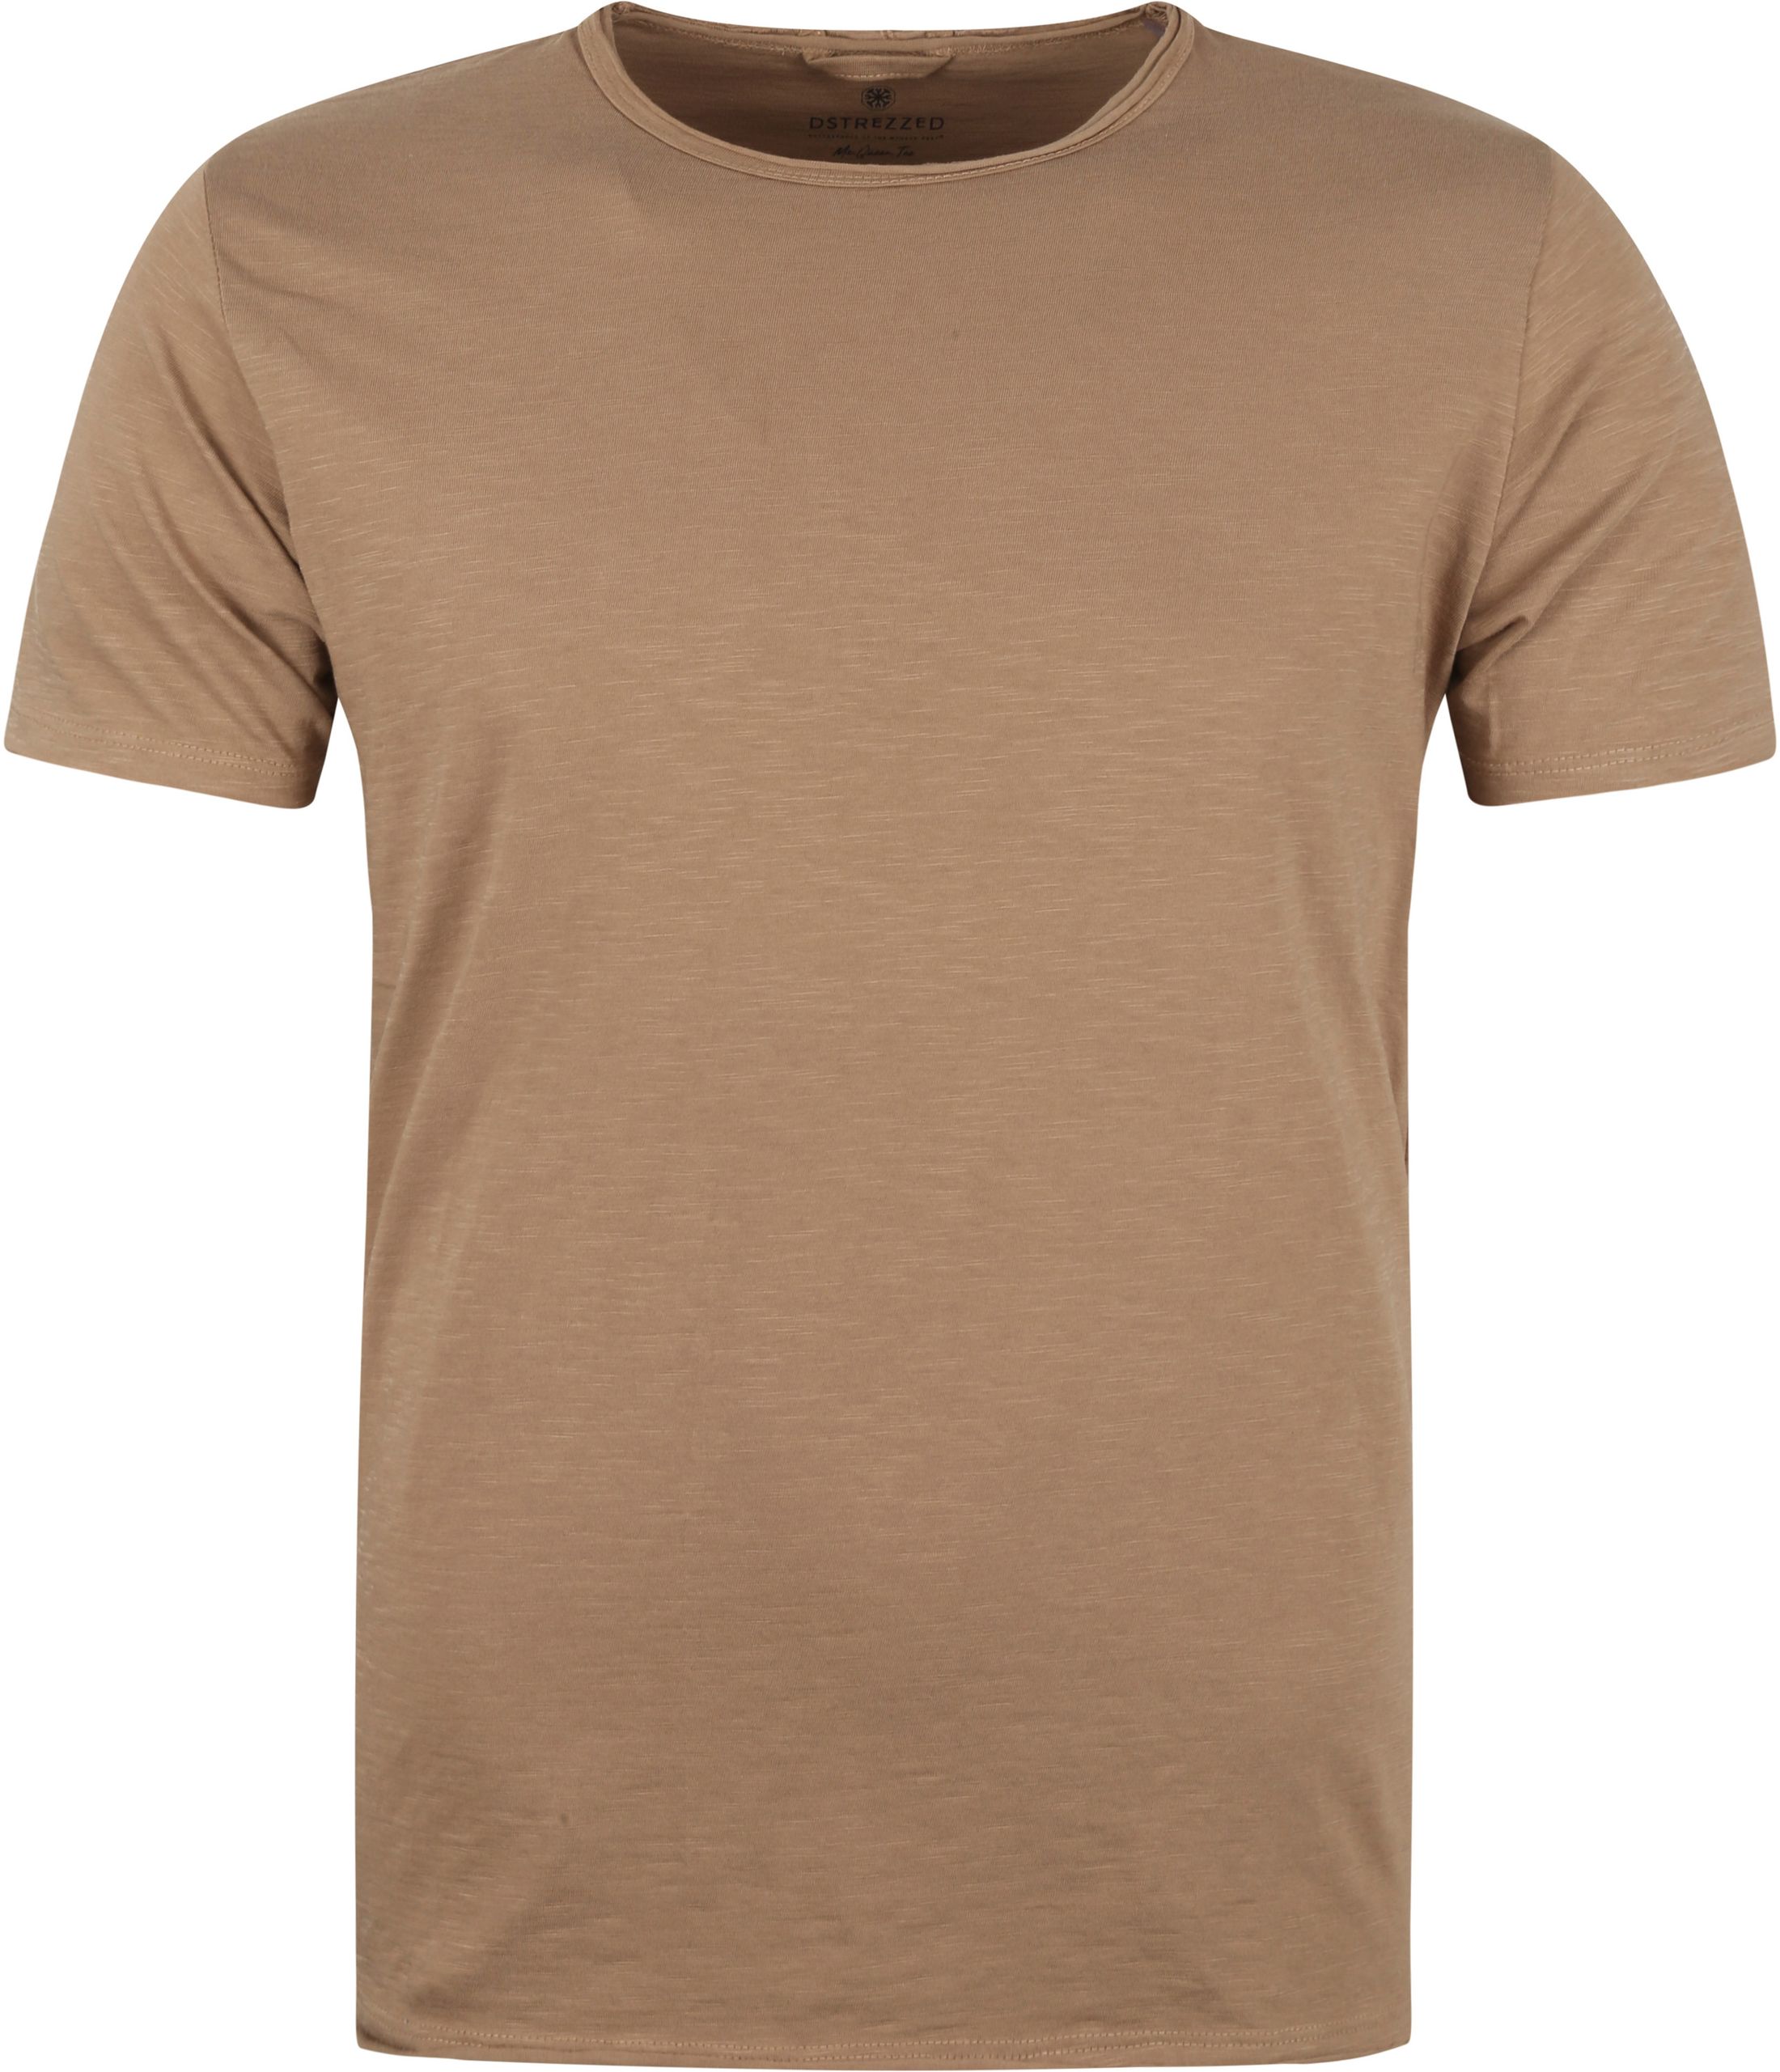 Dstrezzed Mc Queen T Shirt Light brown Brown size L